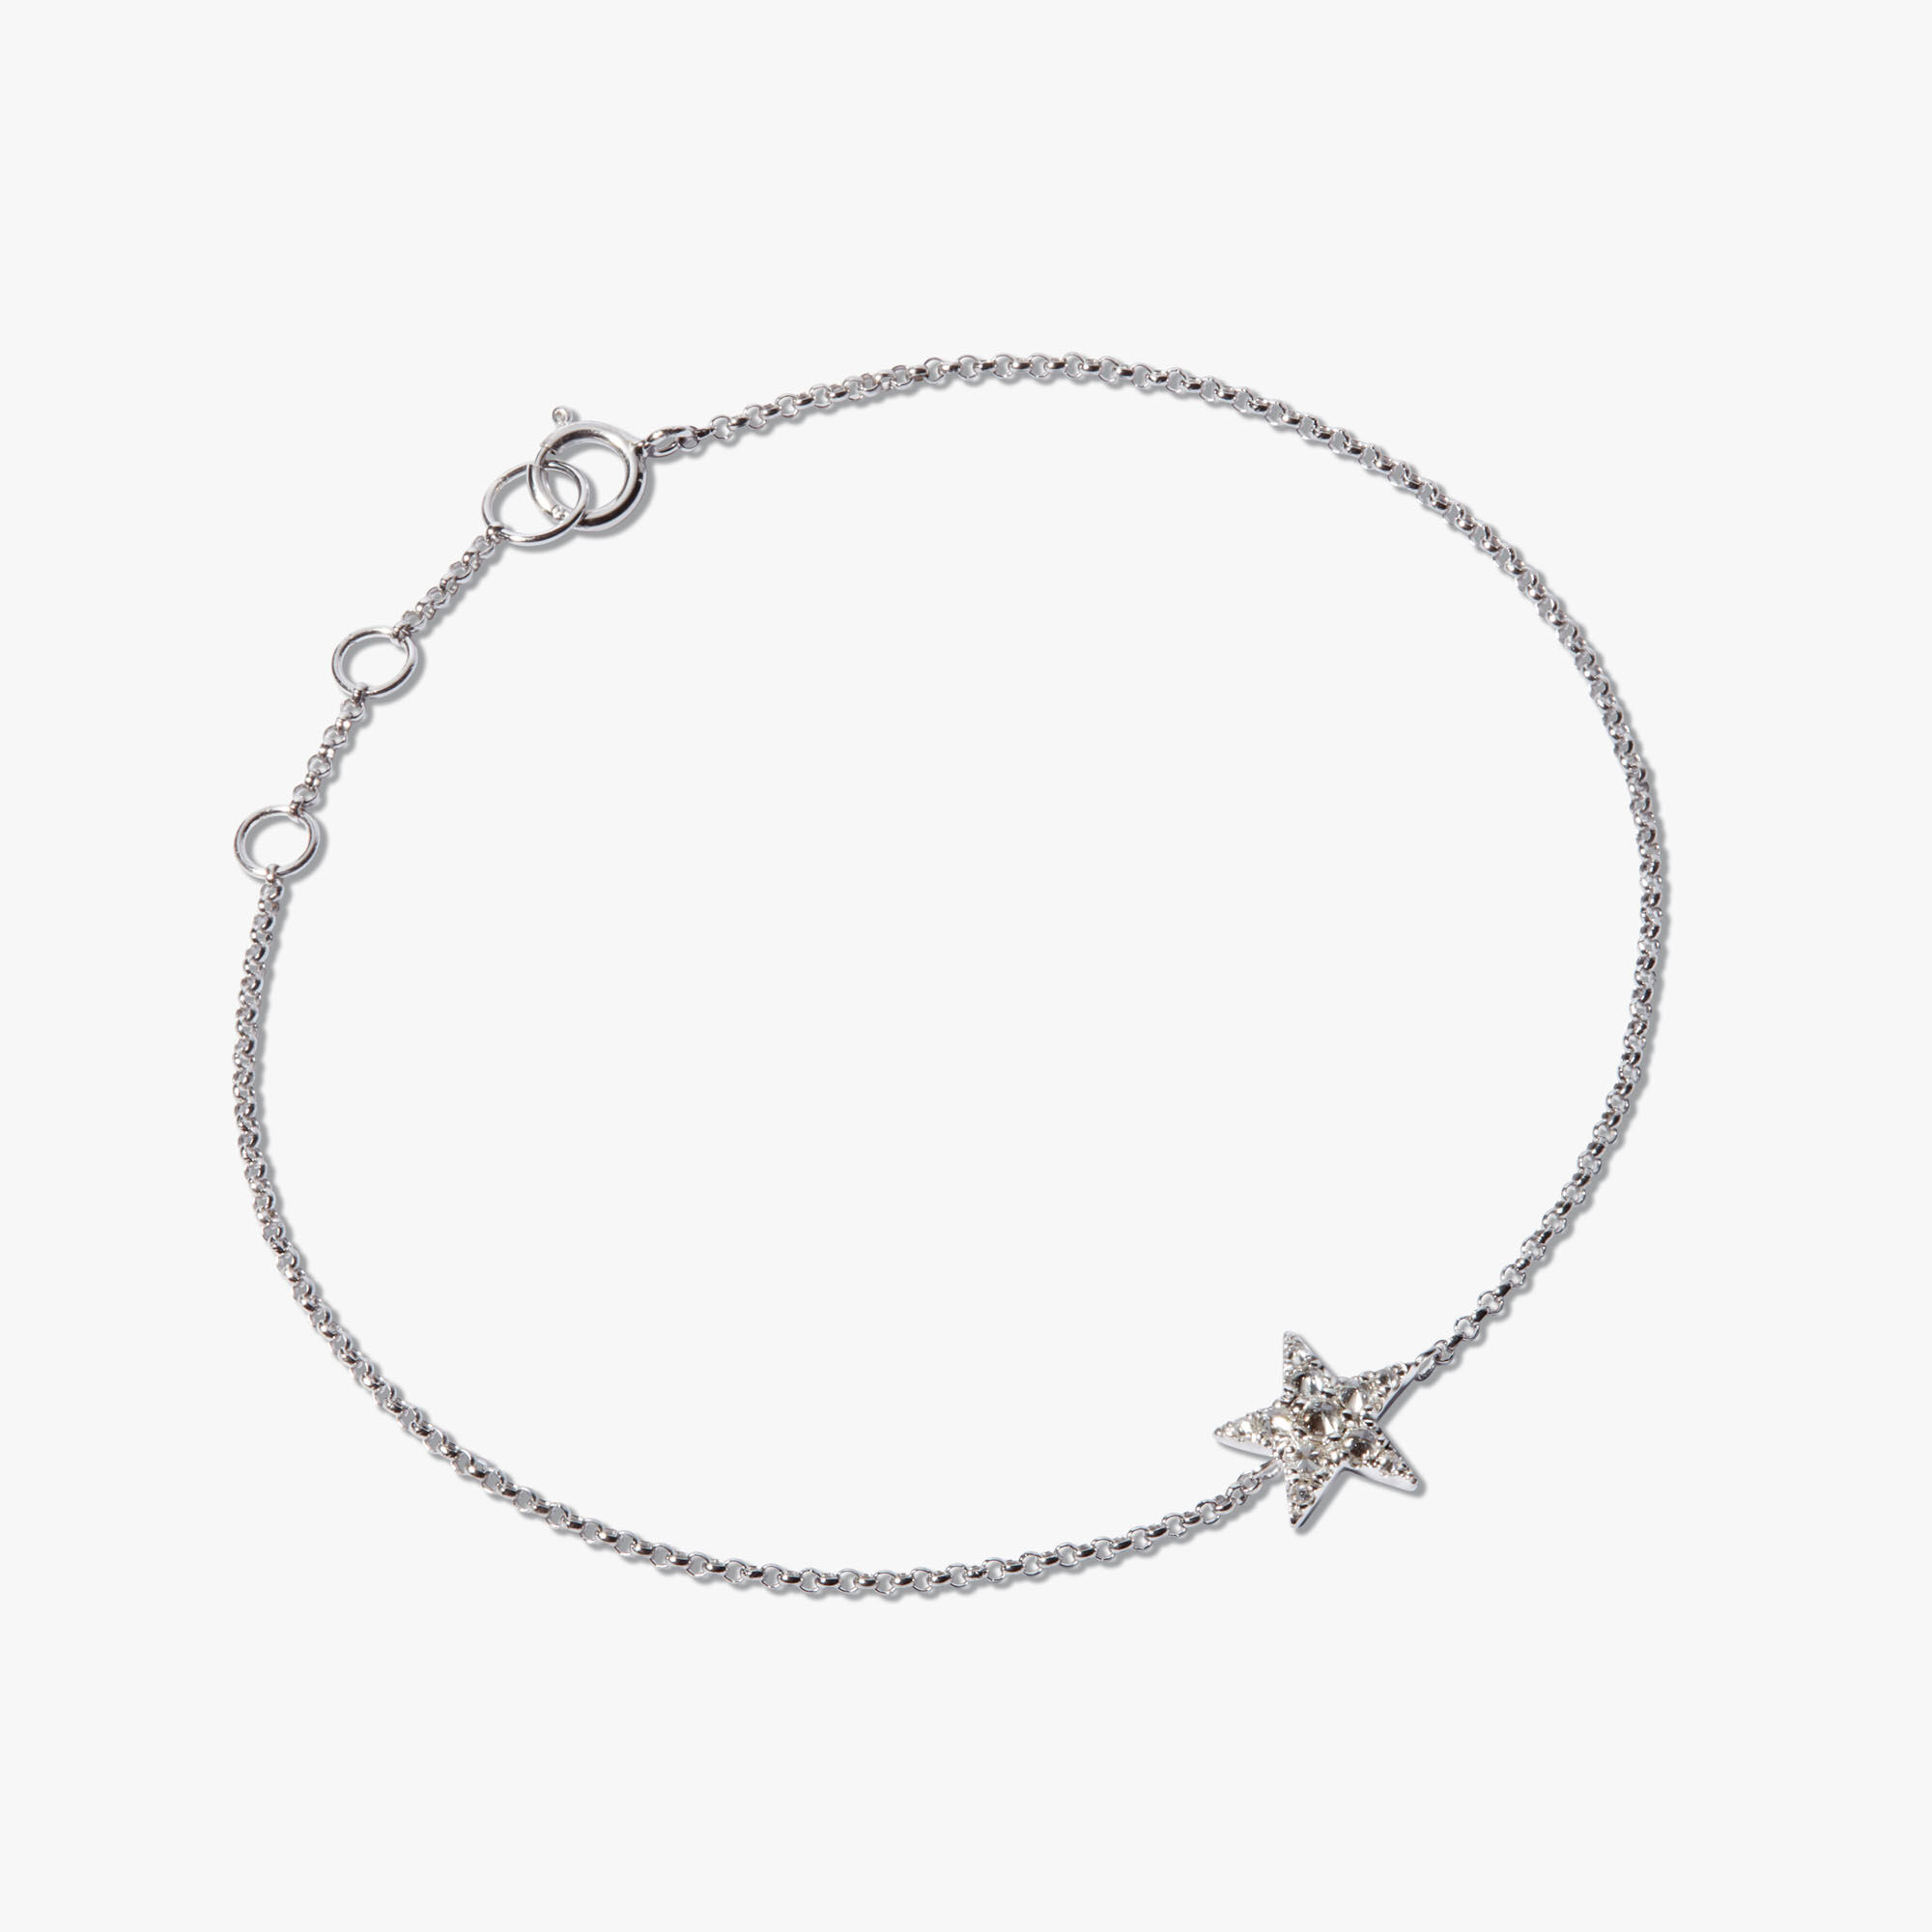 Ana Luisa Jewelry Carter Diamond Bracelet